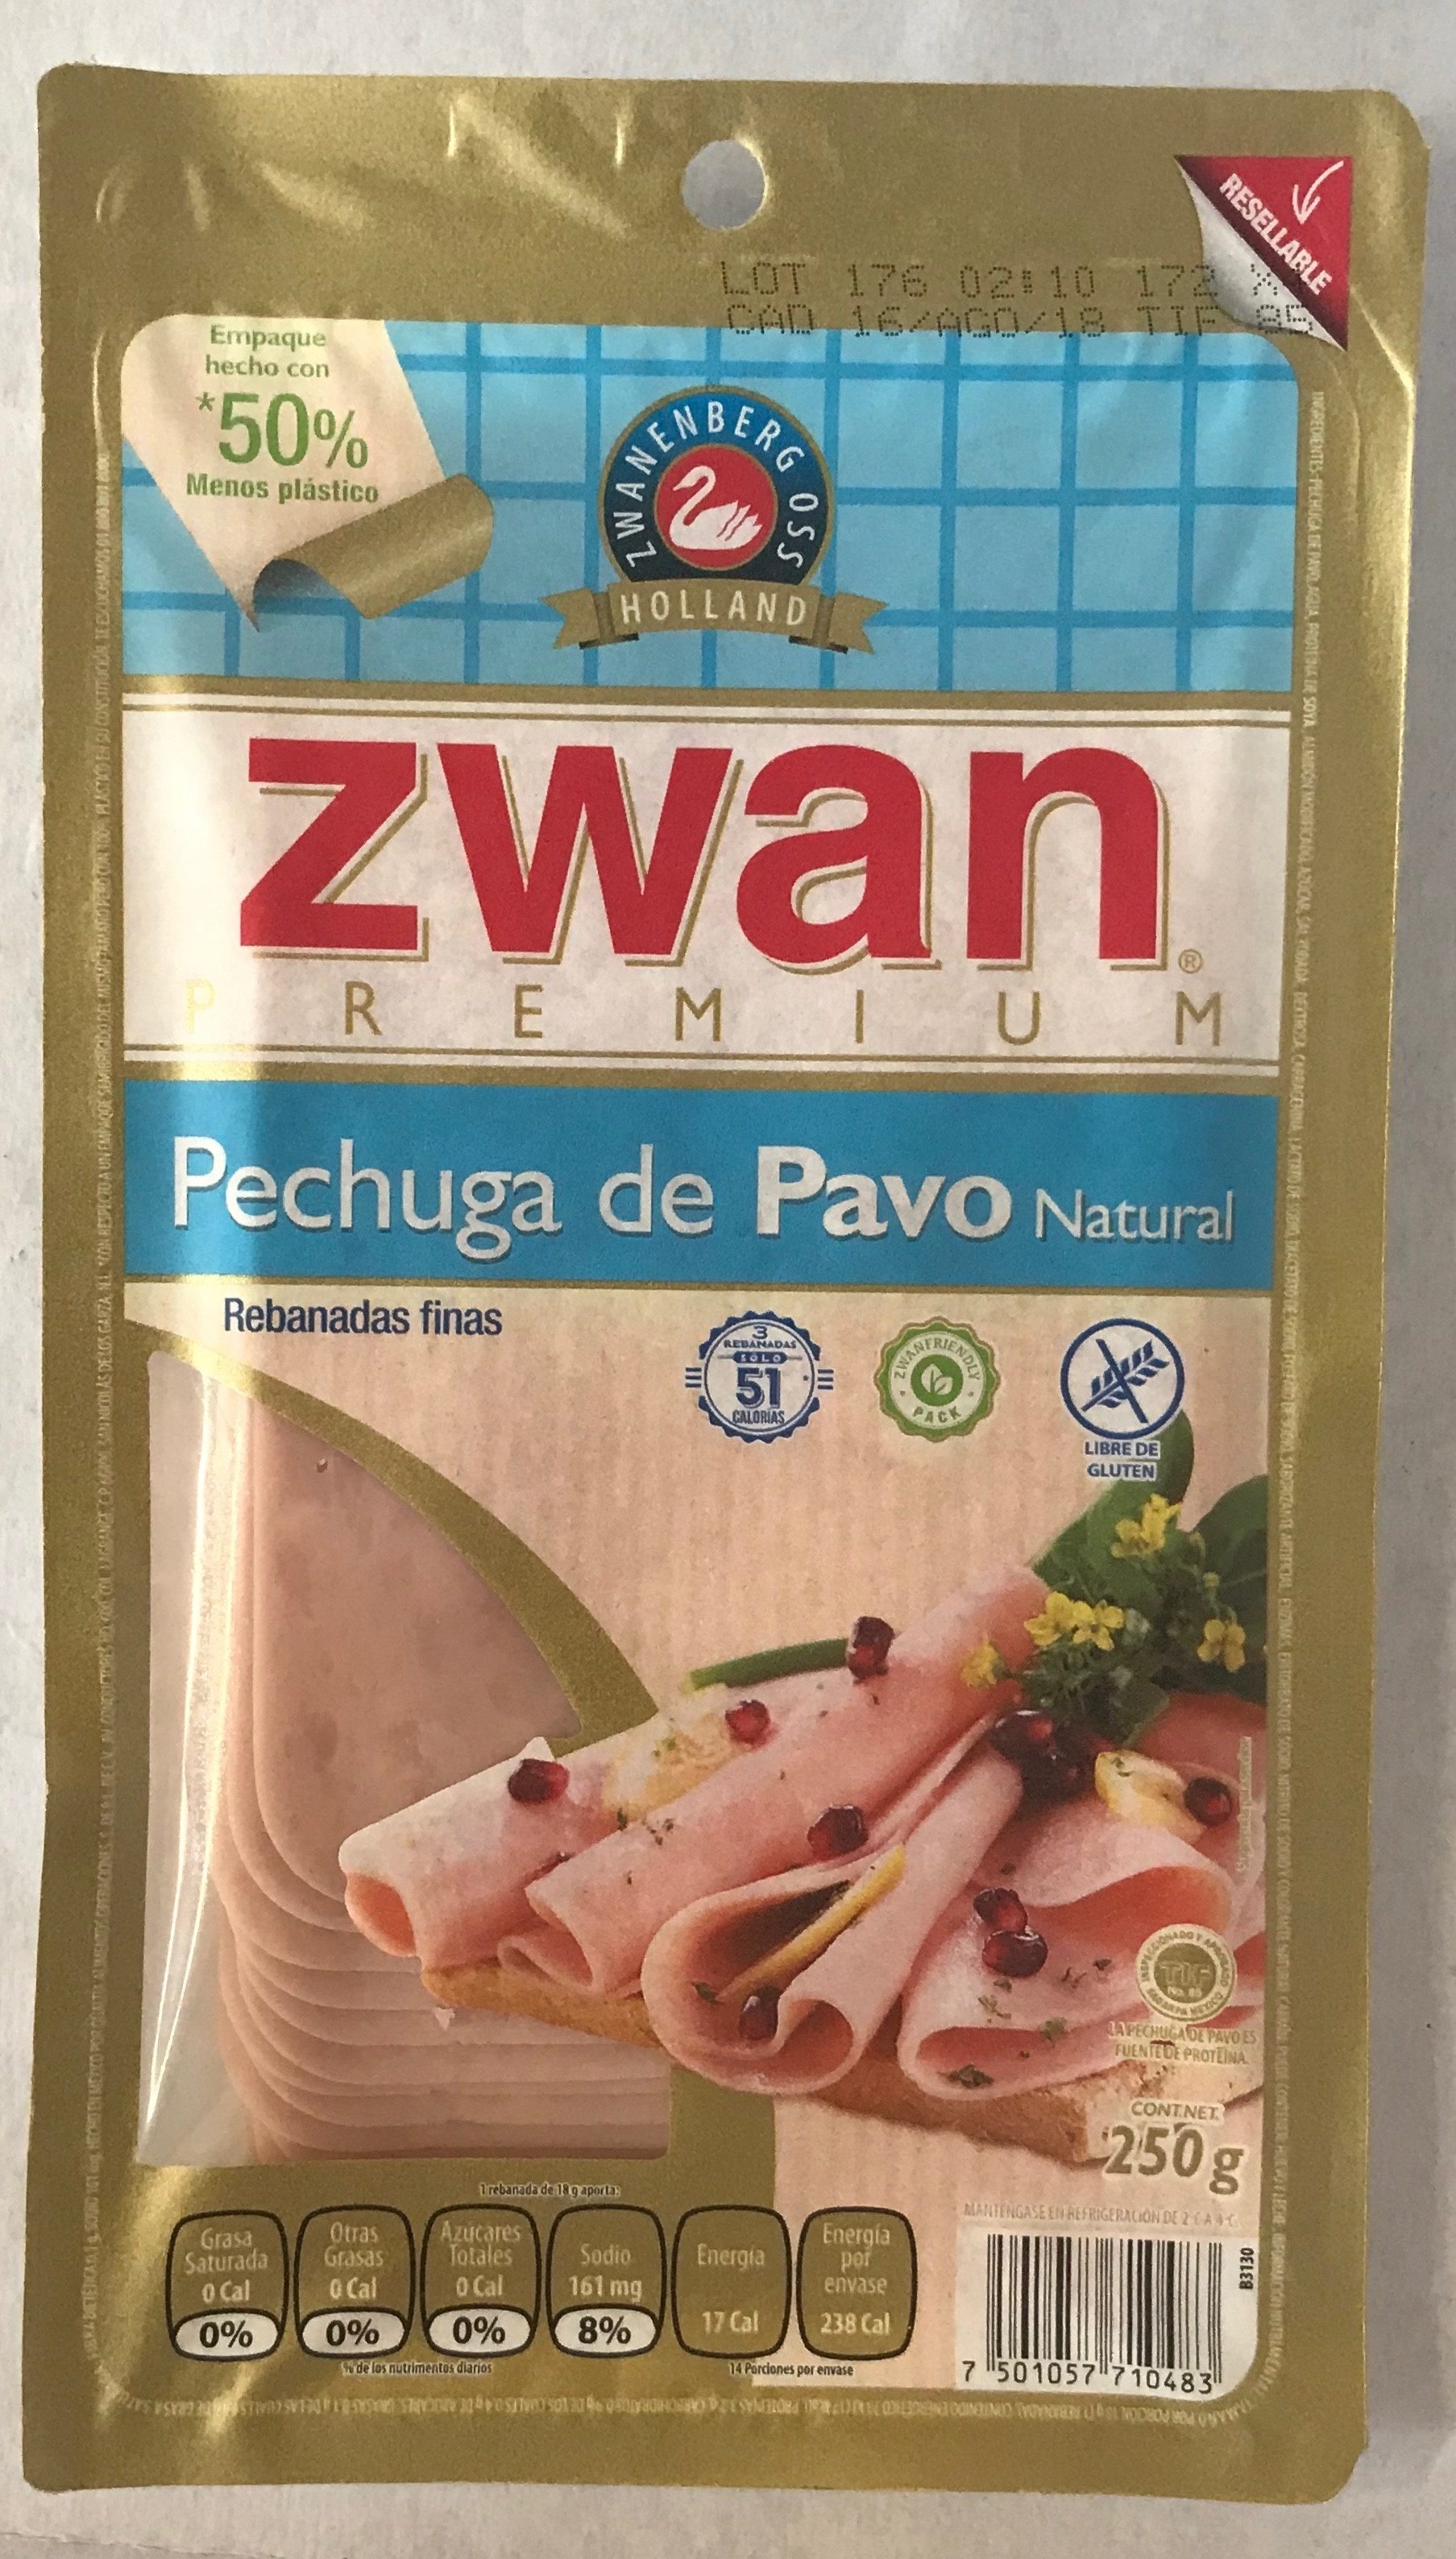 Pechuga de pavo natural Zwan - Product - es